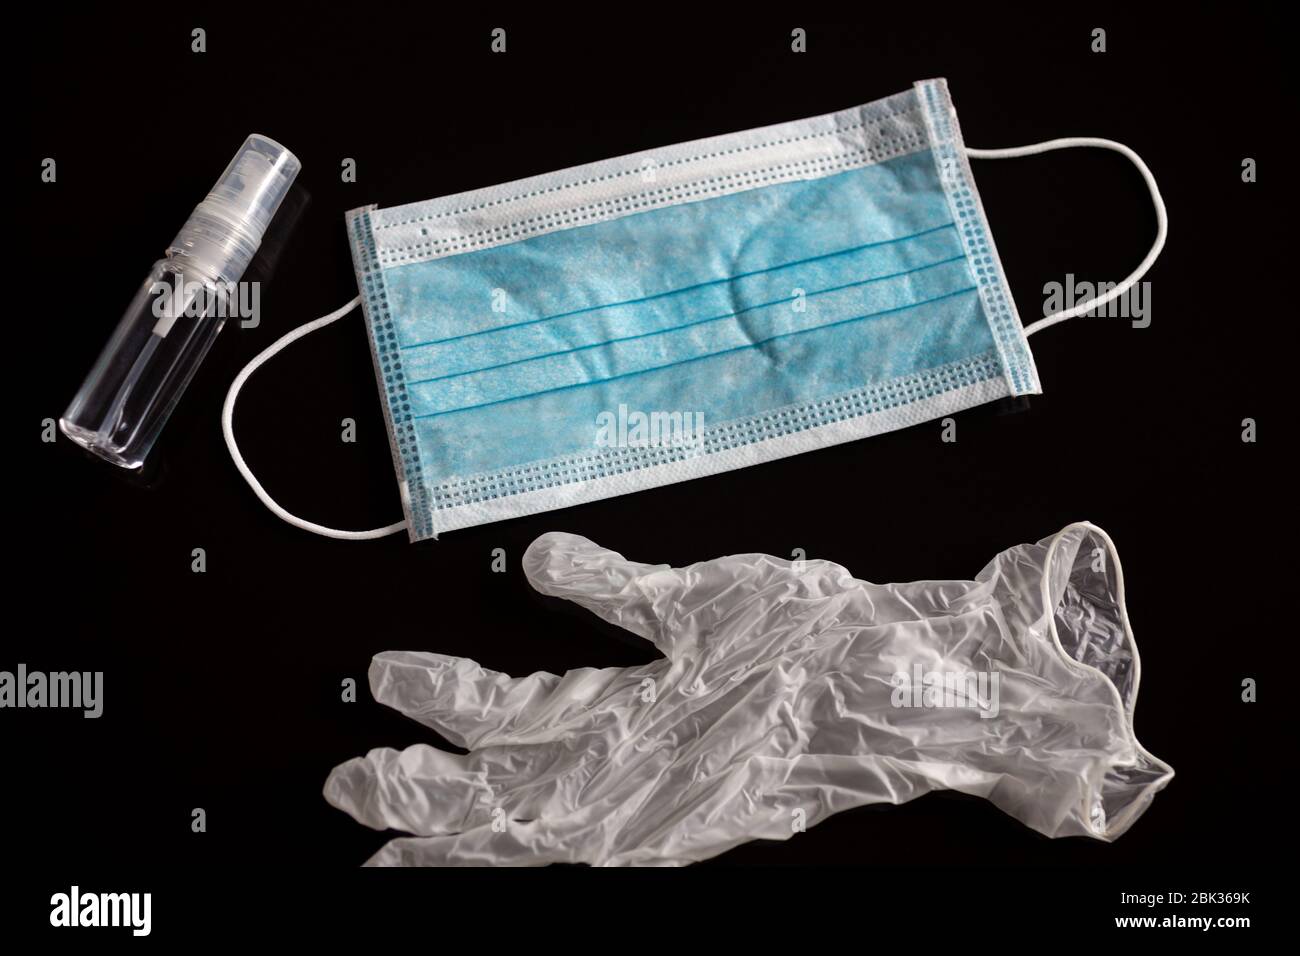 Un masque chirurgical, des gants et de l'alcool pendant la quarantaine du coronavirus covid-19. Arrière-plan noir Banque D'Images